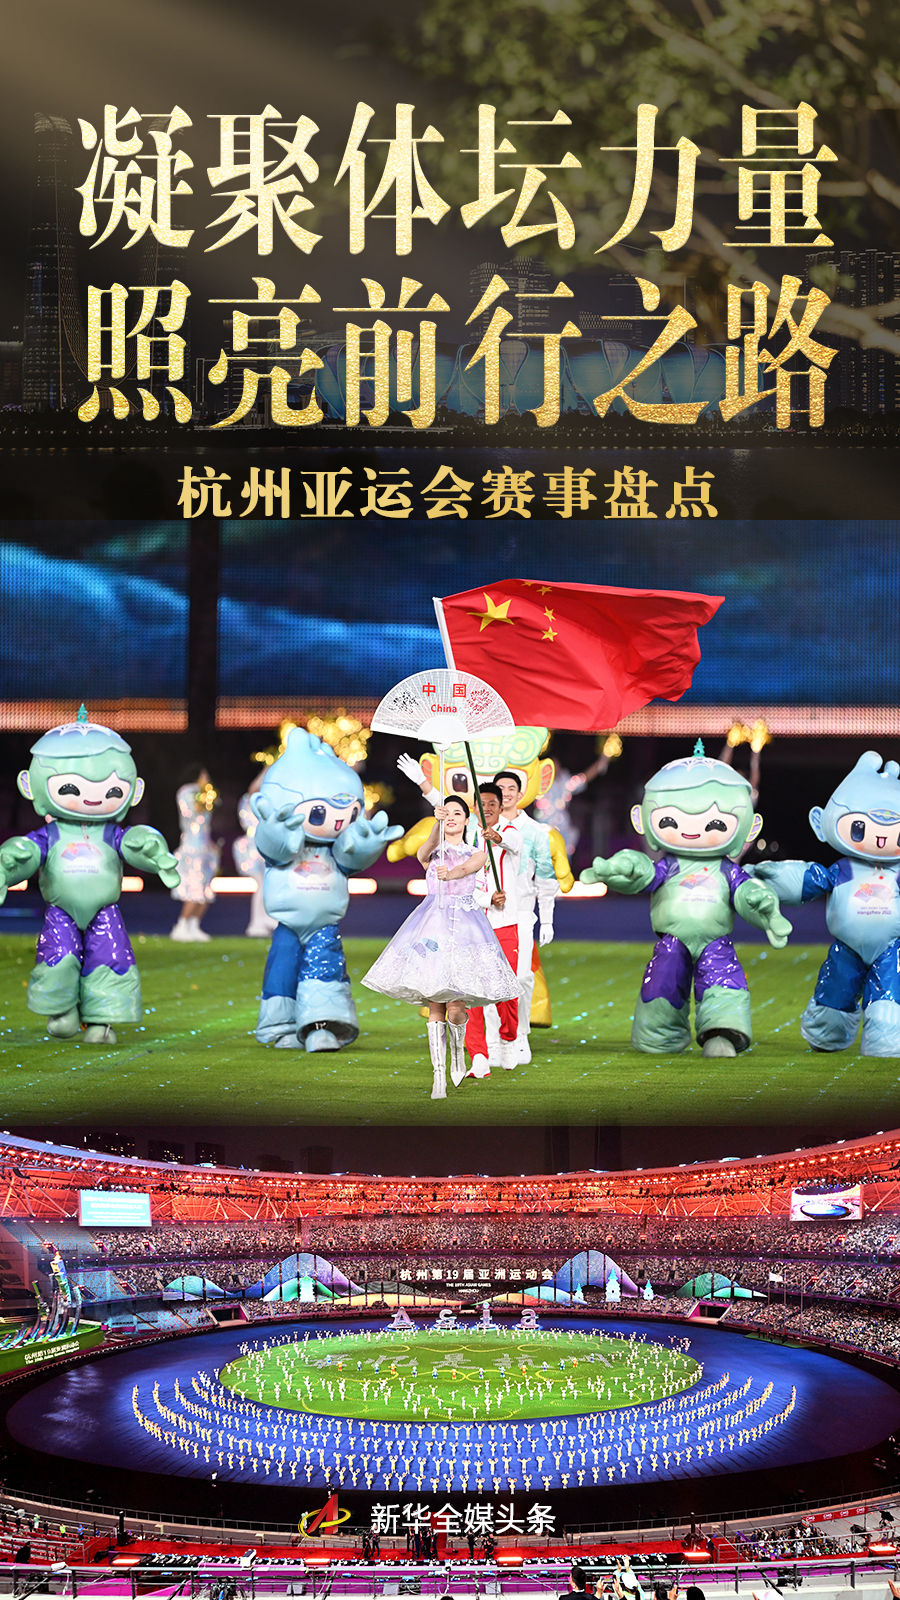 凝聚体坛力量 照亮前行之路——杭州亚运会赛事盘点